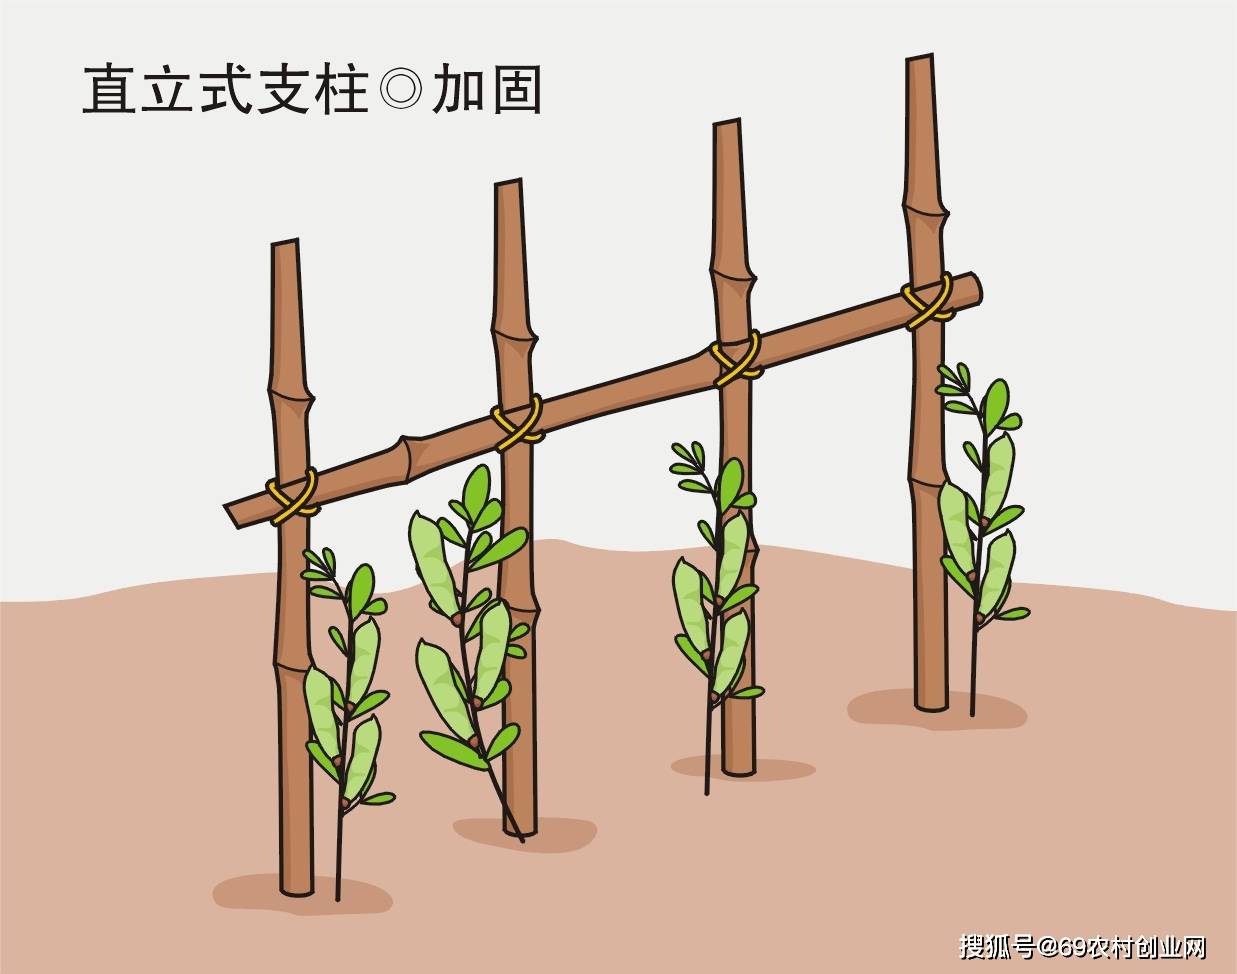 小农夫劳动实践活动:给喜欢爬藤的蔬菜搭建攀藤架